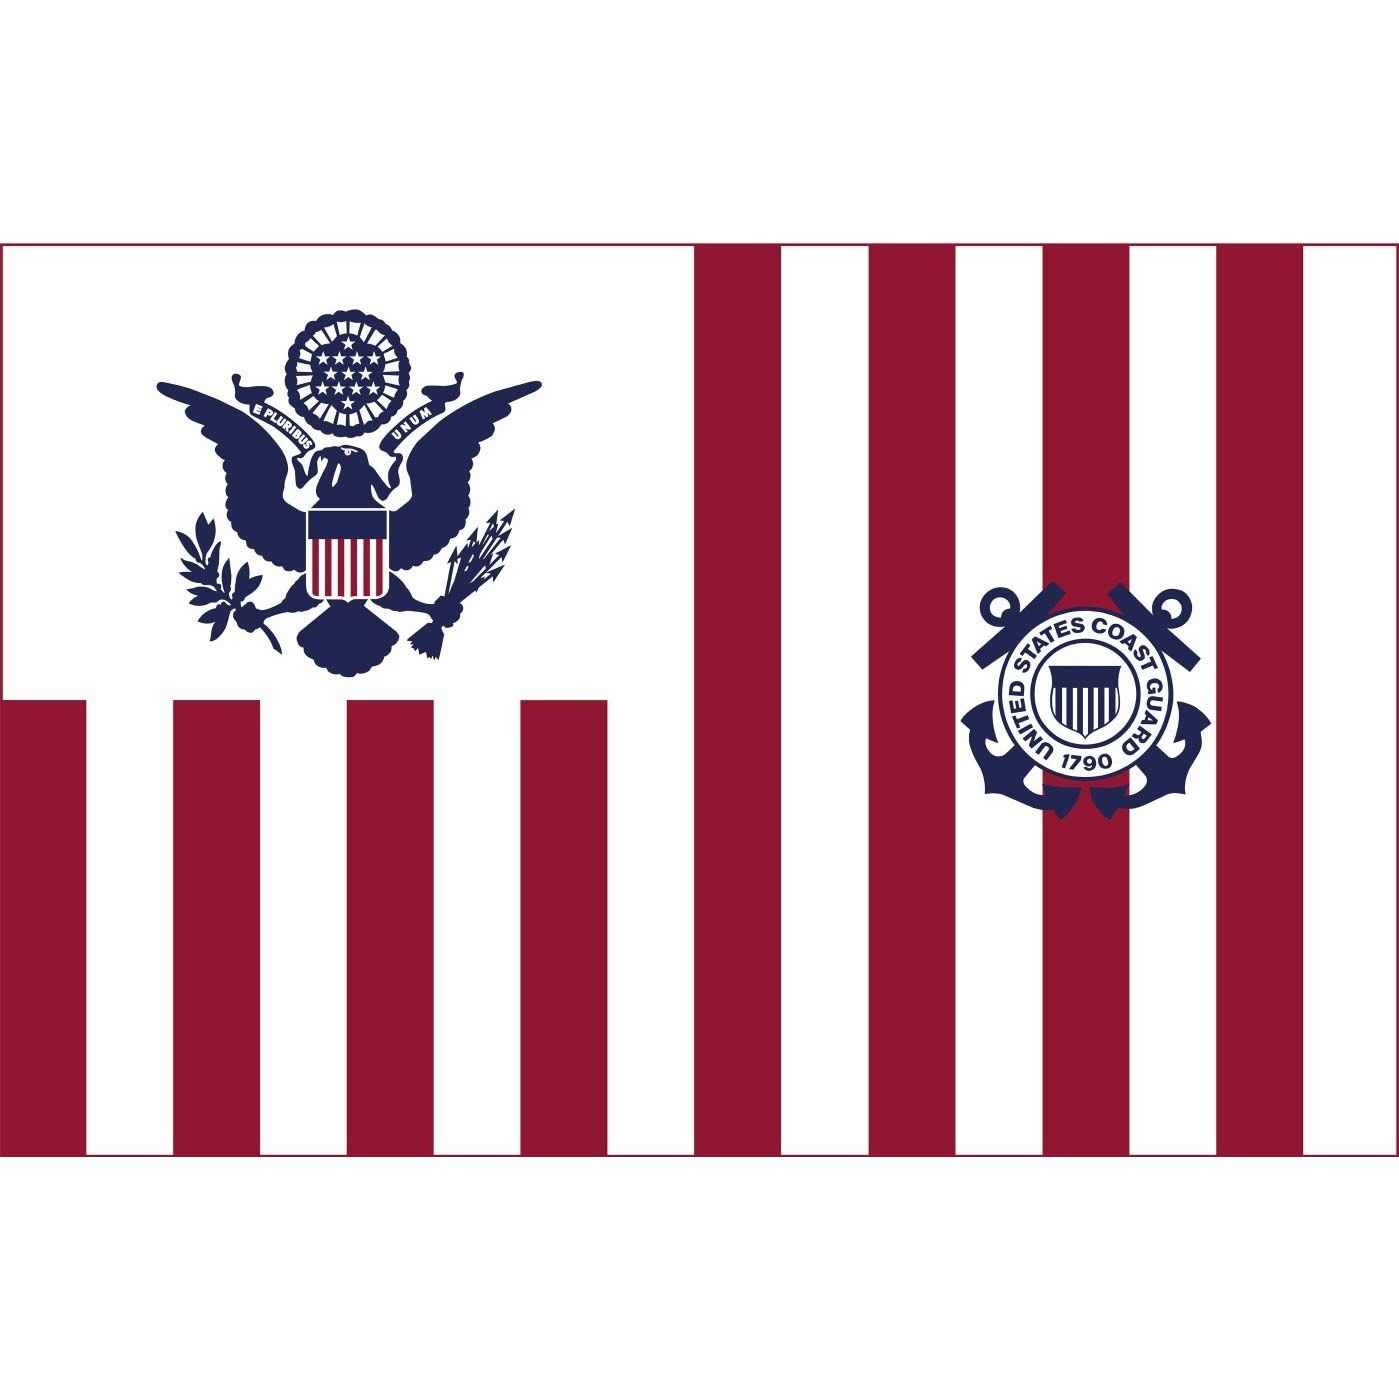 U.S. Coast Guard Ensign # Outdoor Flag